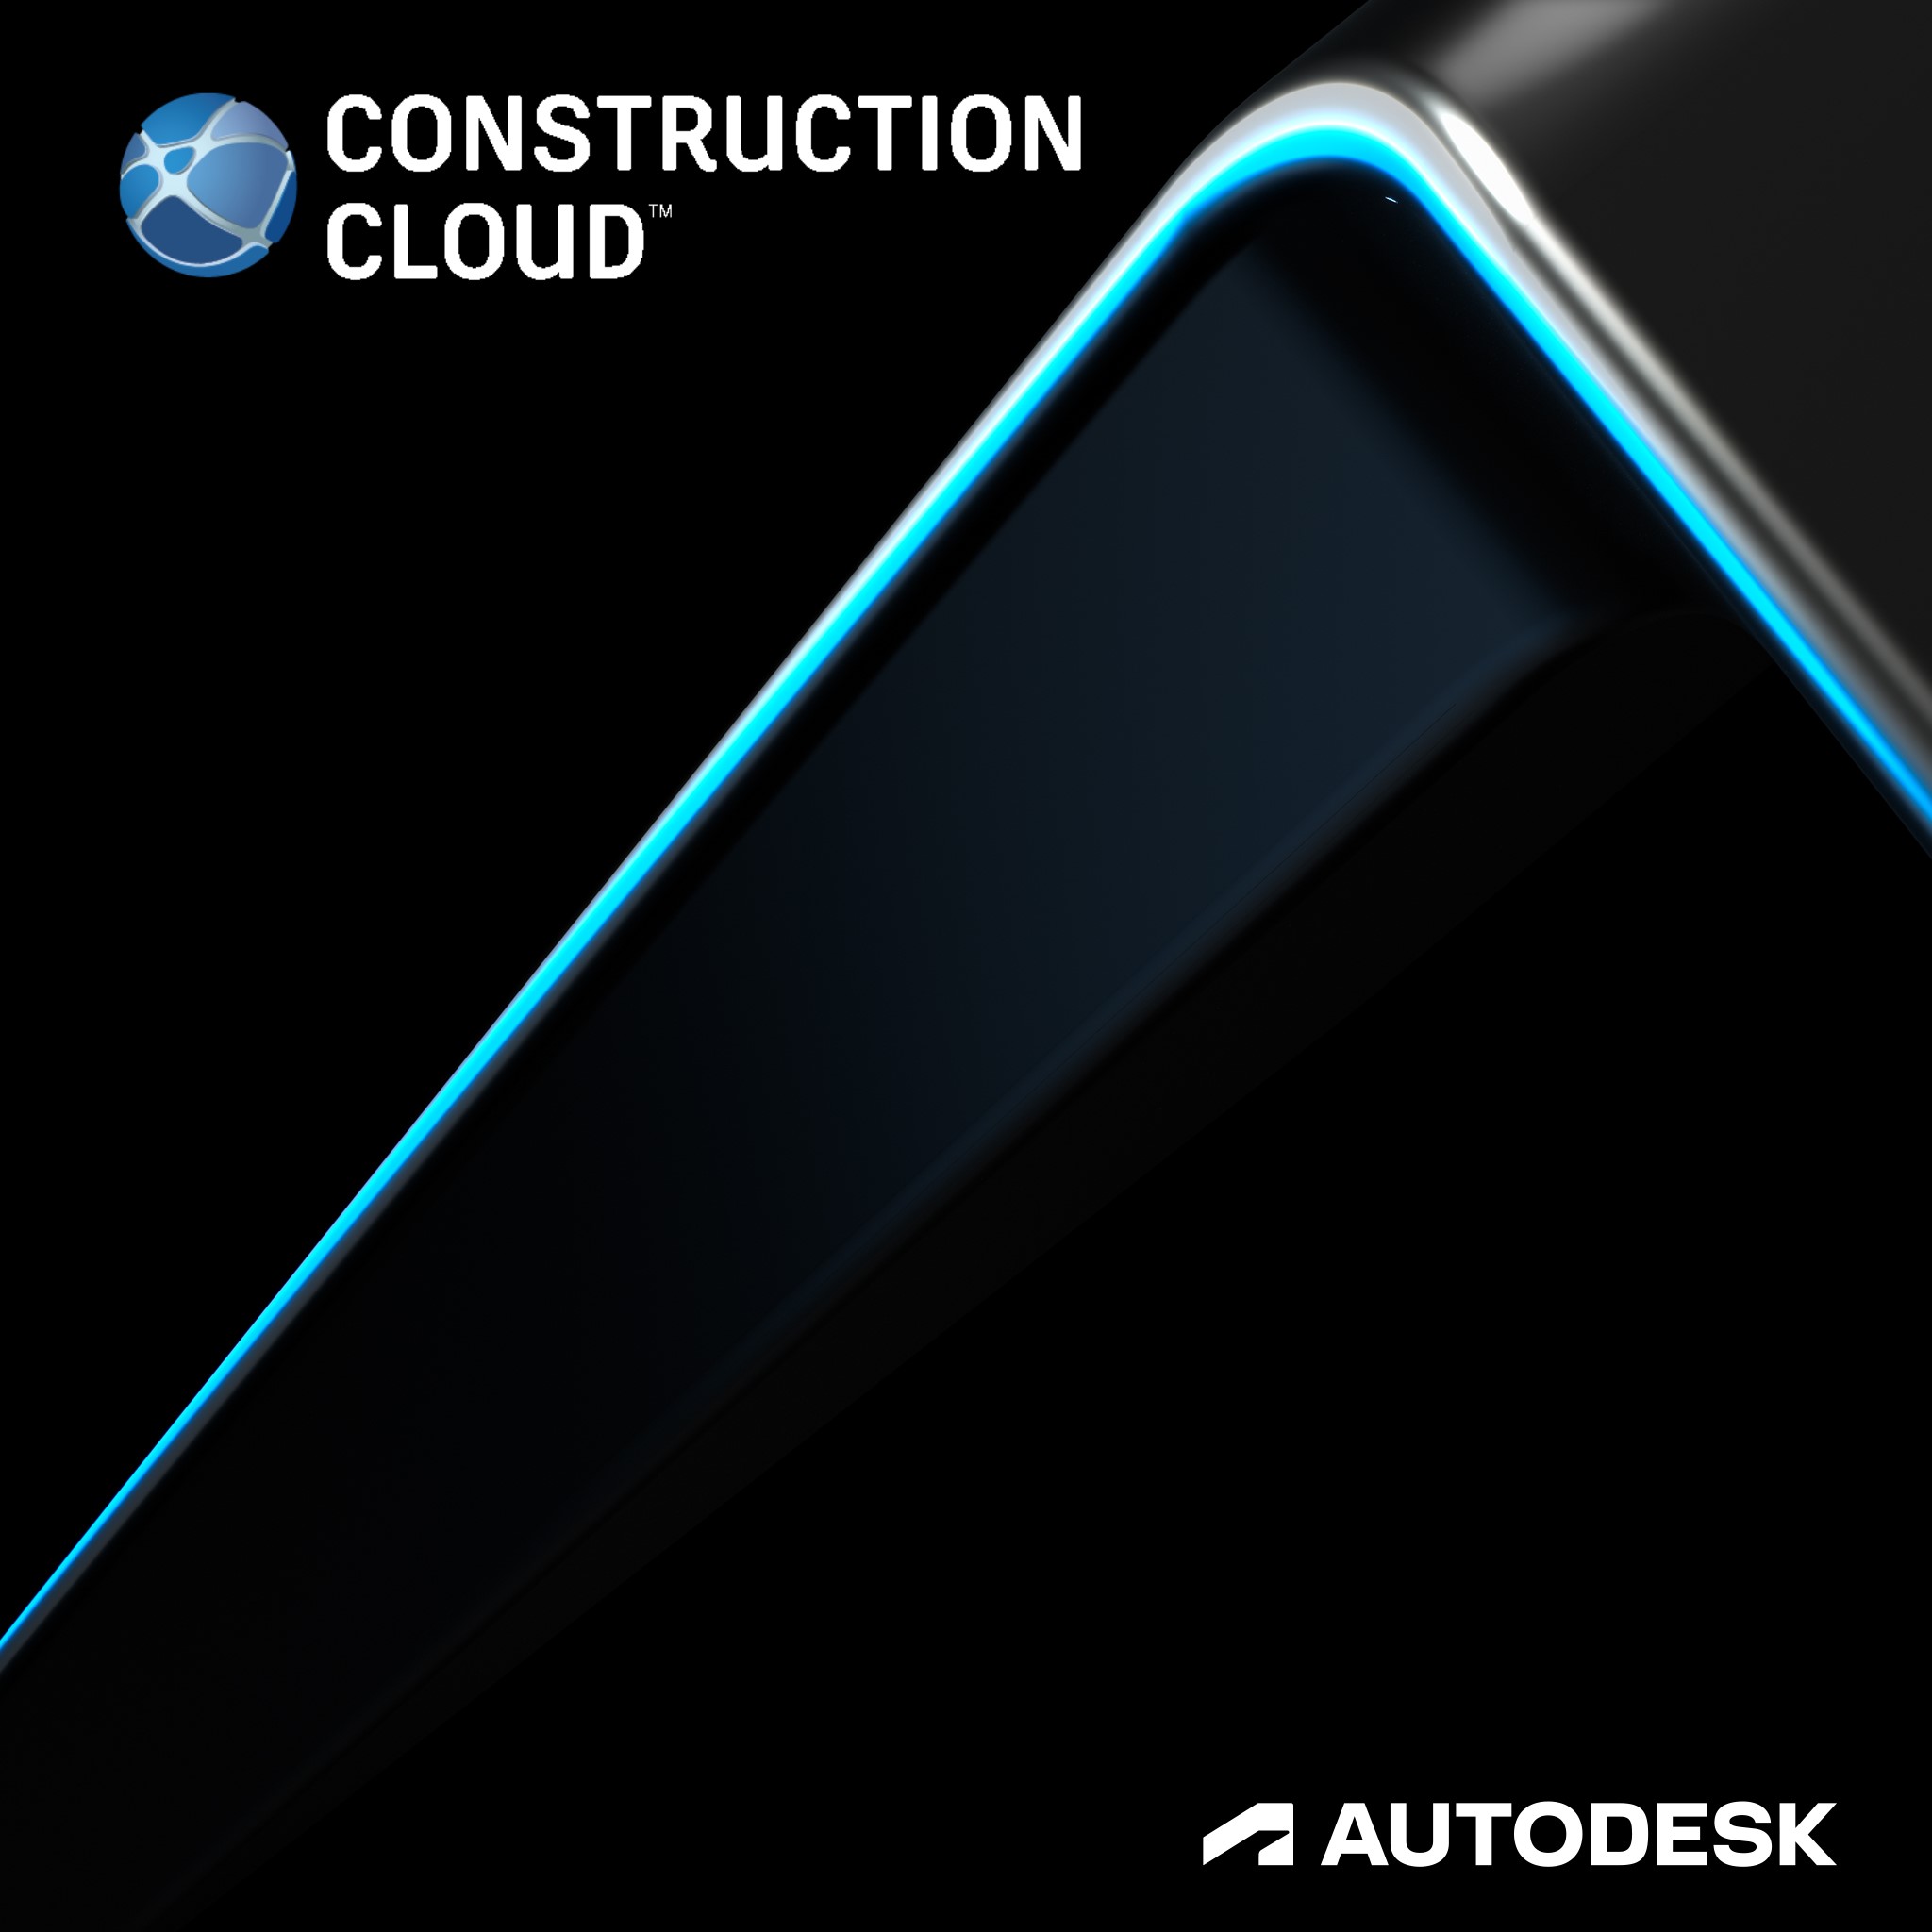 Construction Cloud